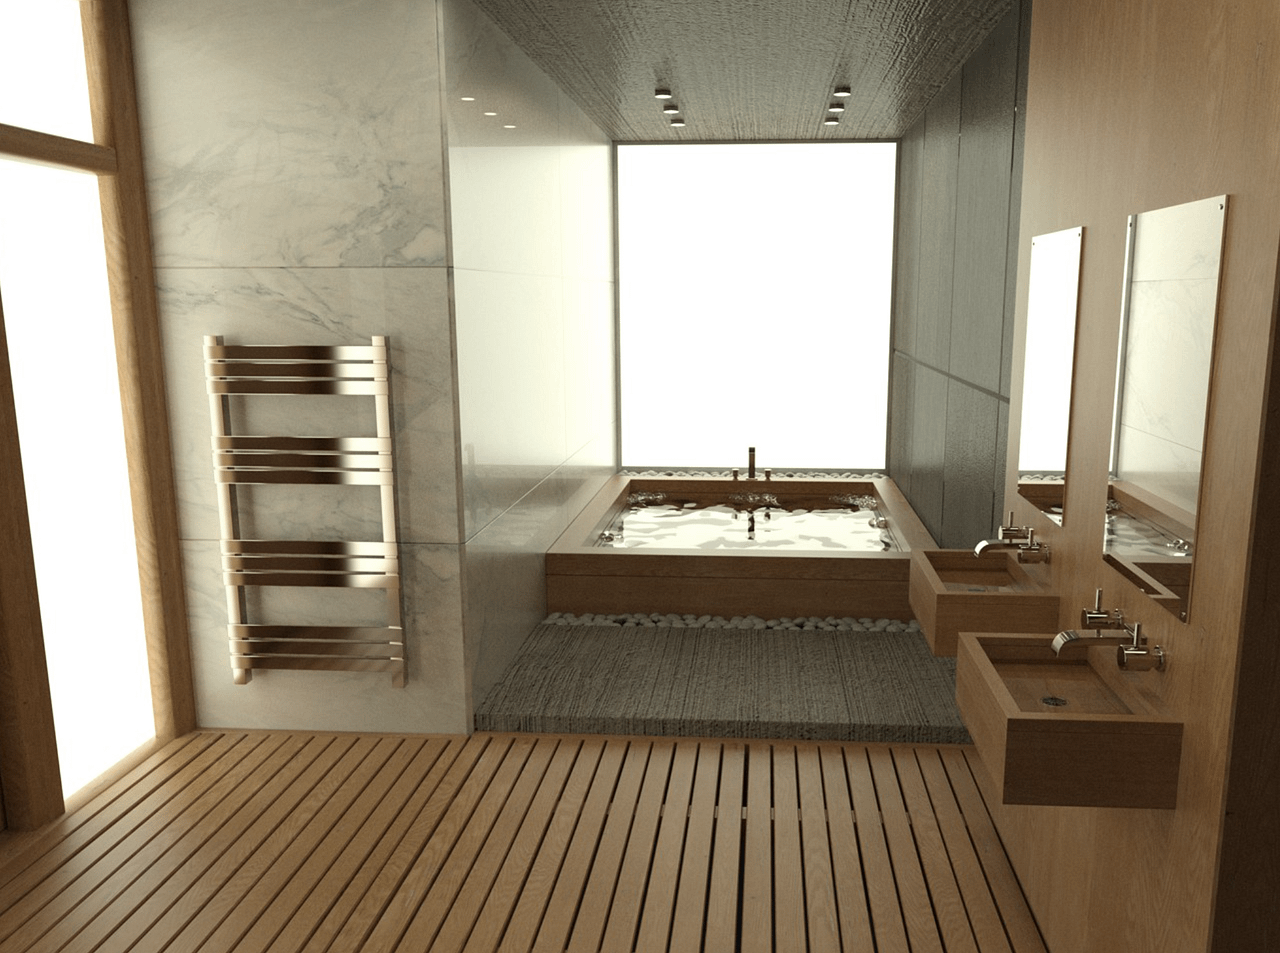 daz modern bathroom model